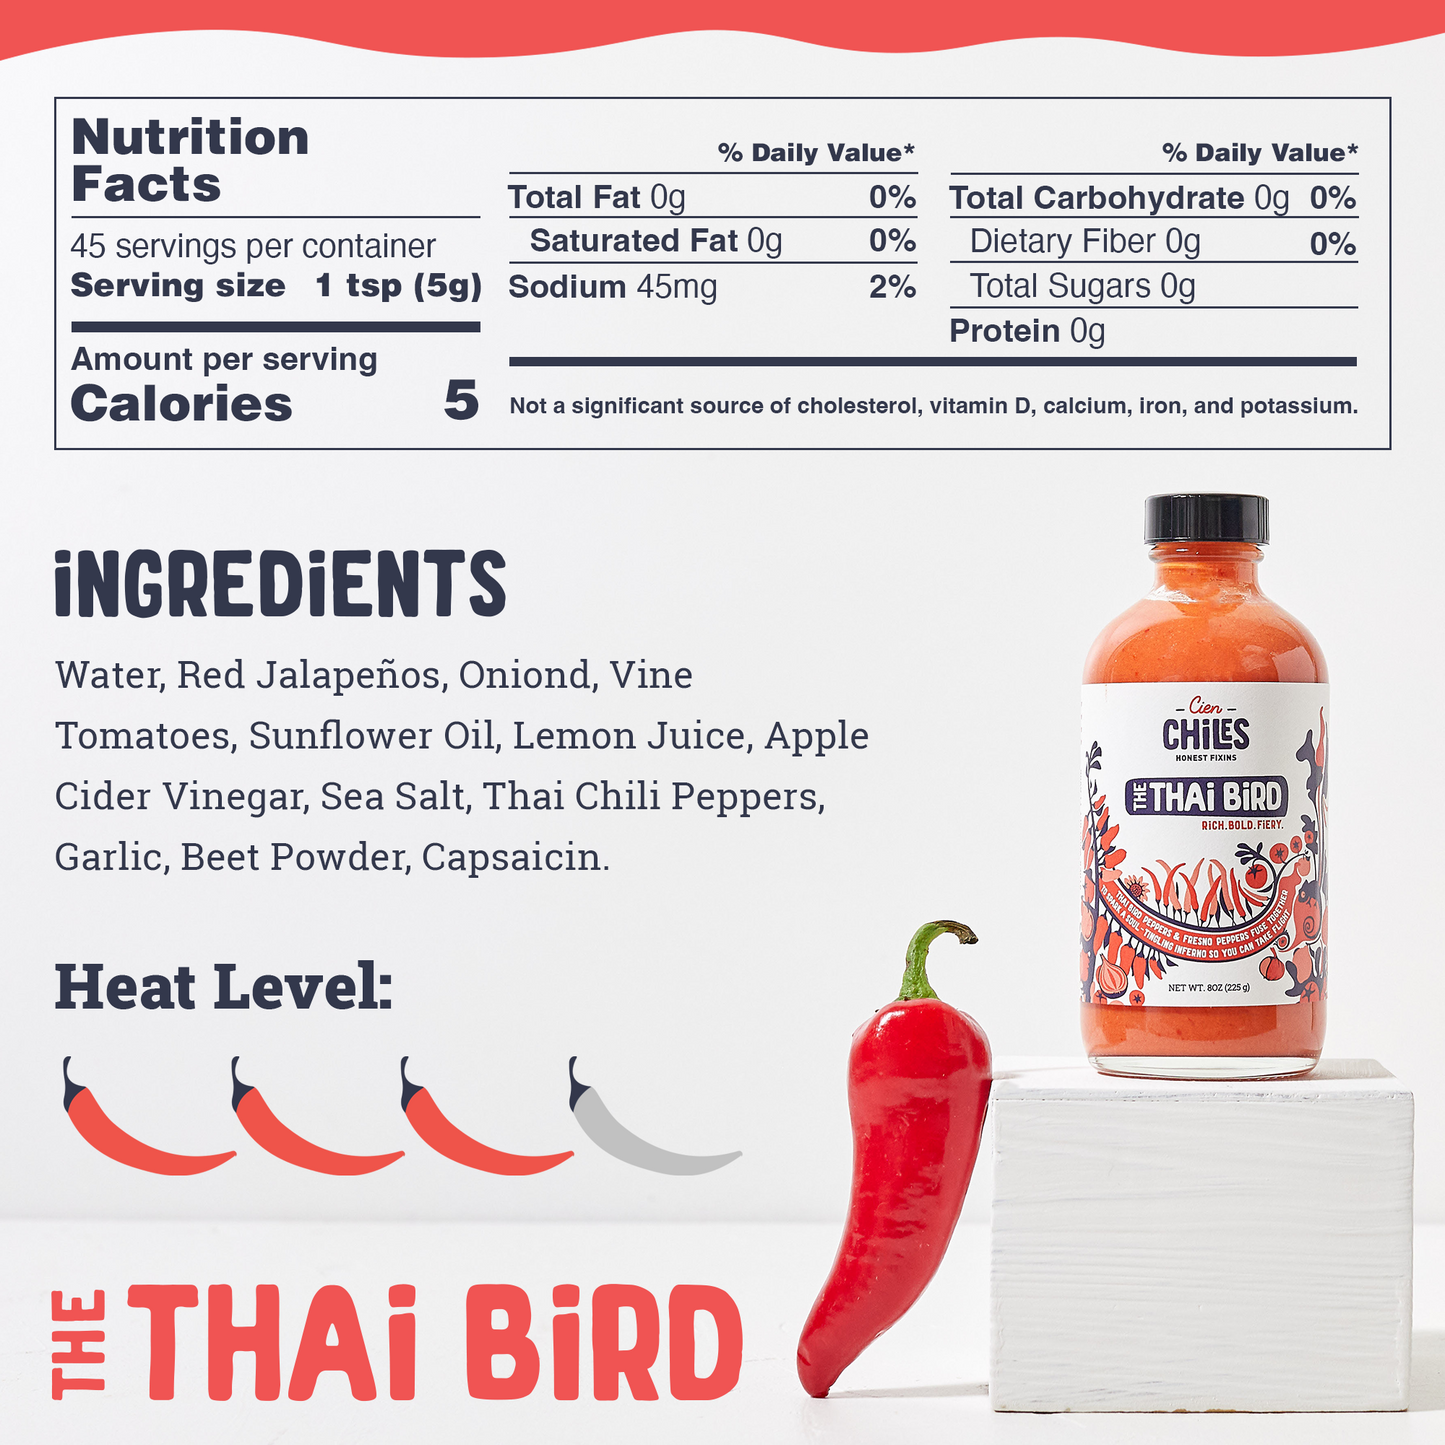 The Thai Bird